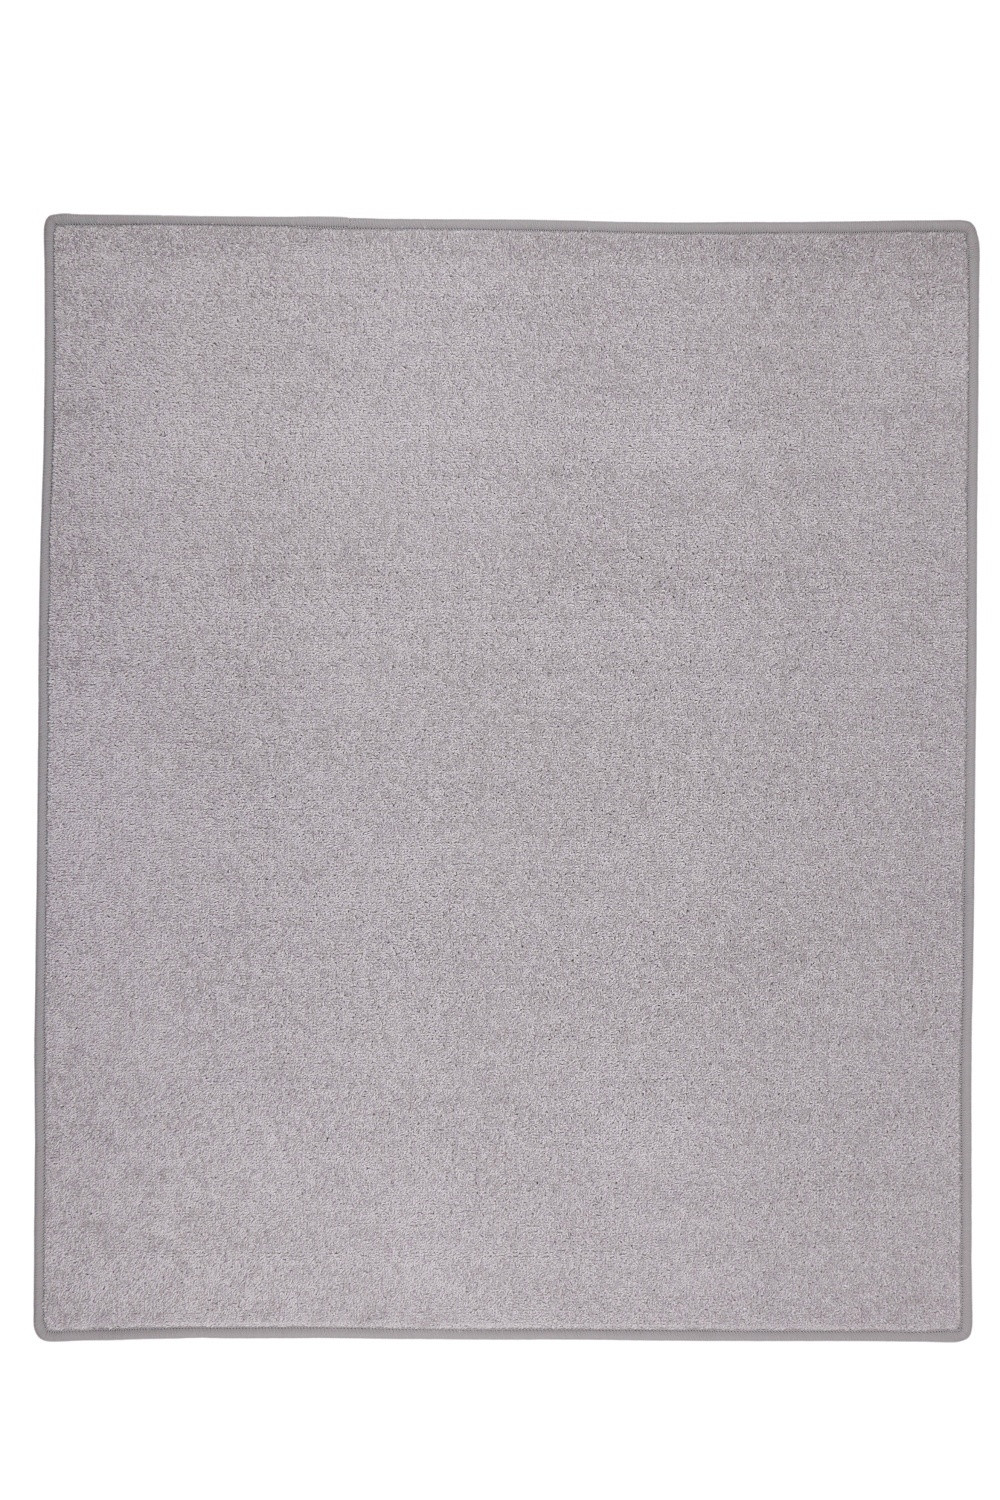 Kusový koberec Eton sivý 73 - 140x200 cm Vopi koberce 